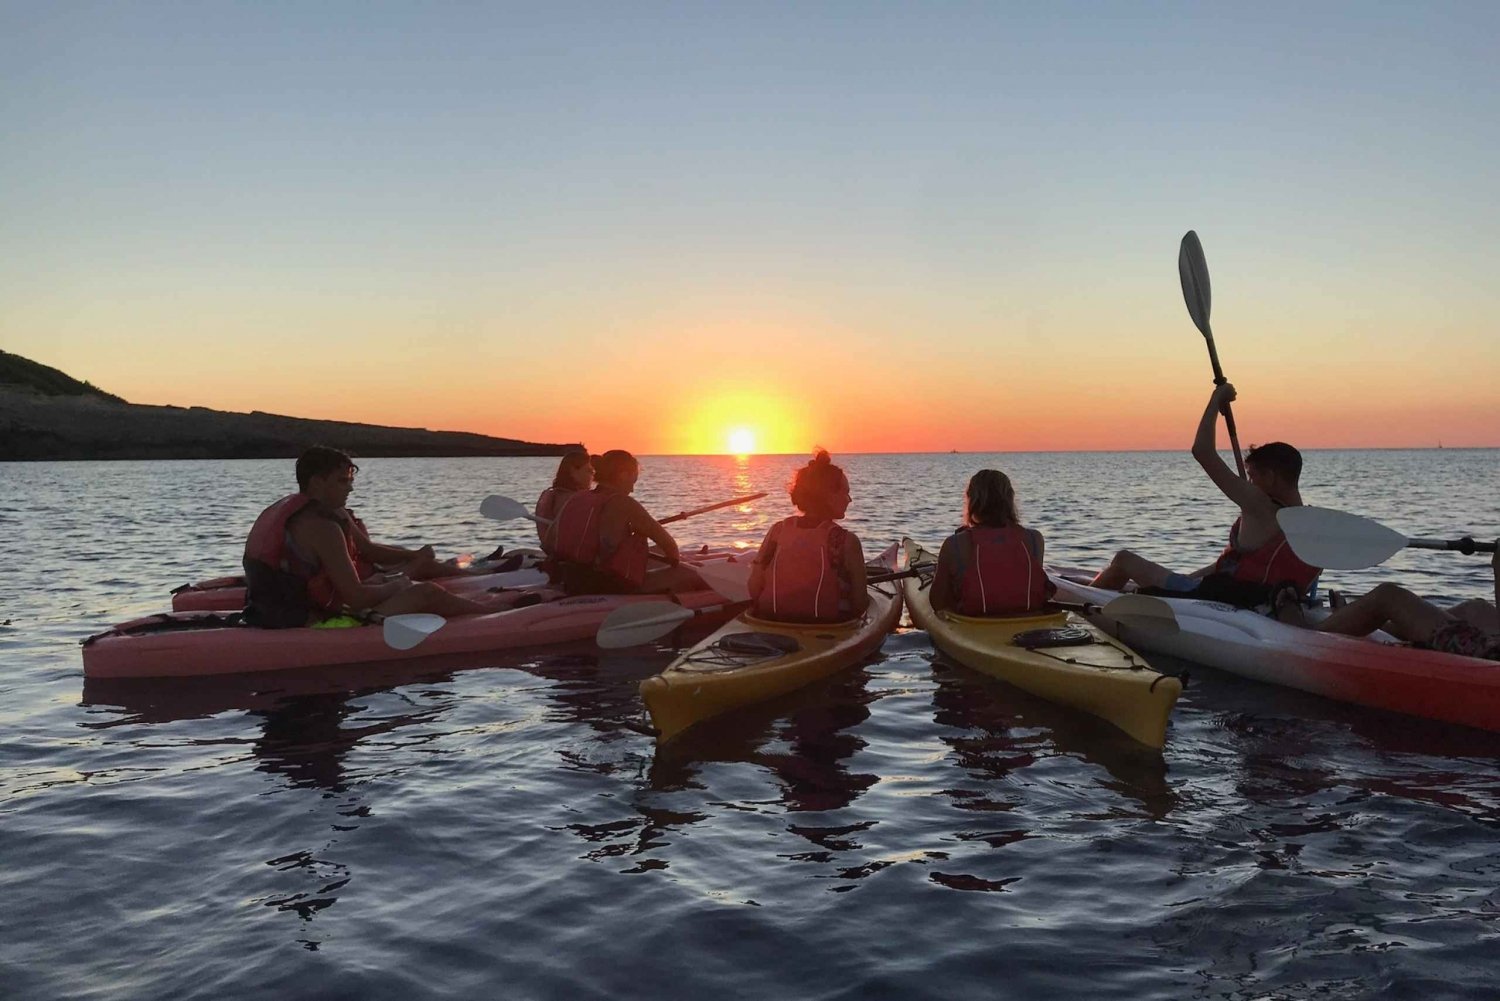 Ibiza: Havkajaksejlads ved solnedgang og havhuletur